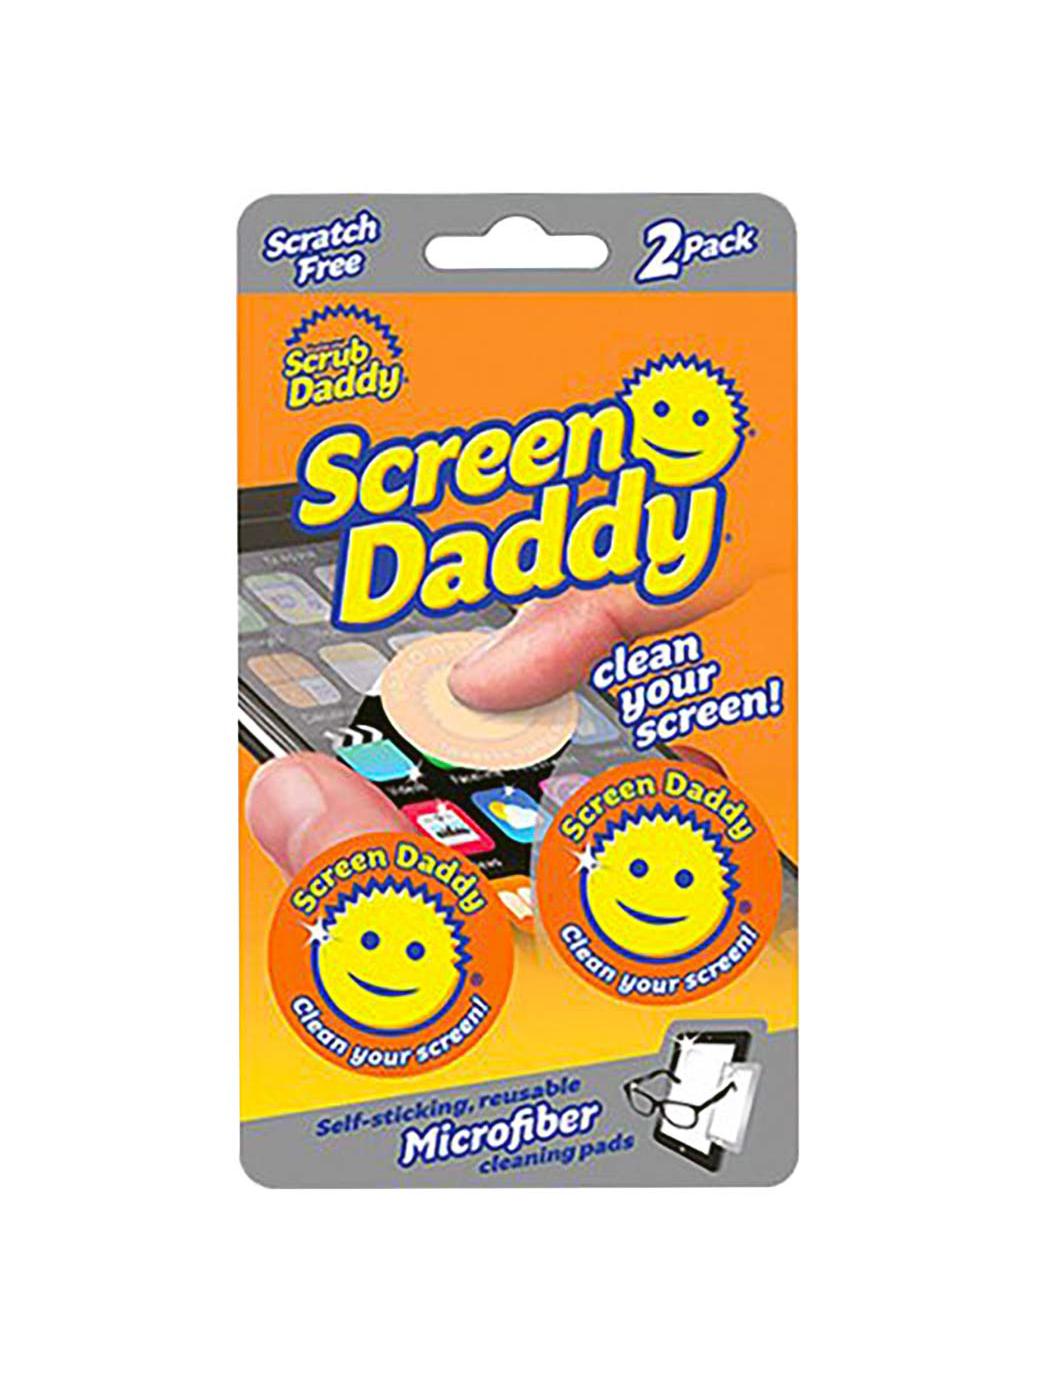 2 Pack Scrub Daddy Dye Free Scrub Mommy Sponge Dual Sided ECO